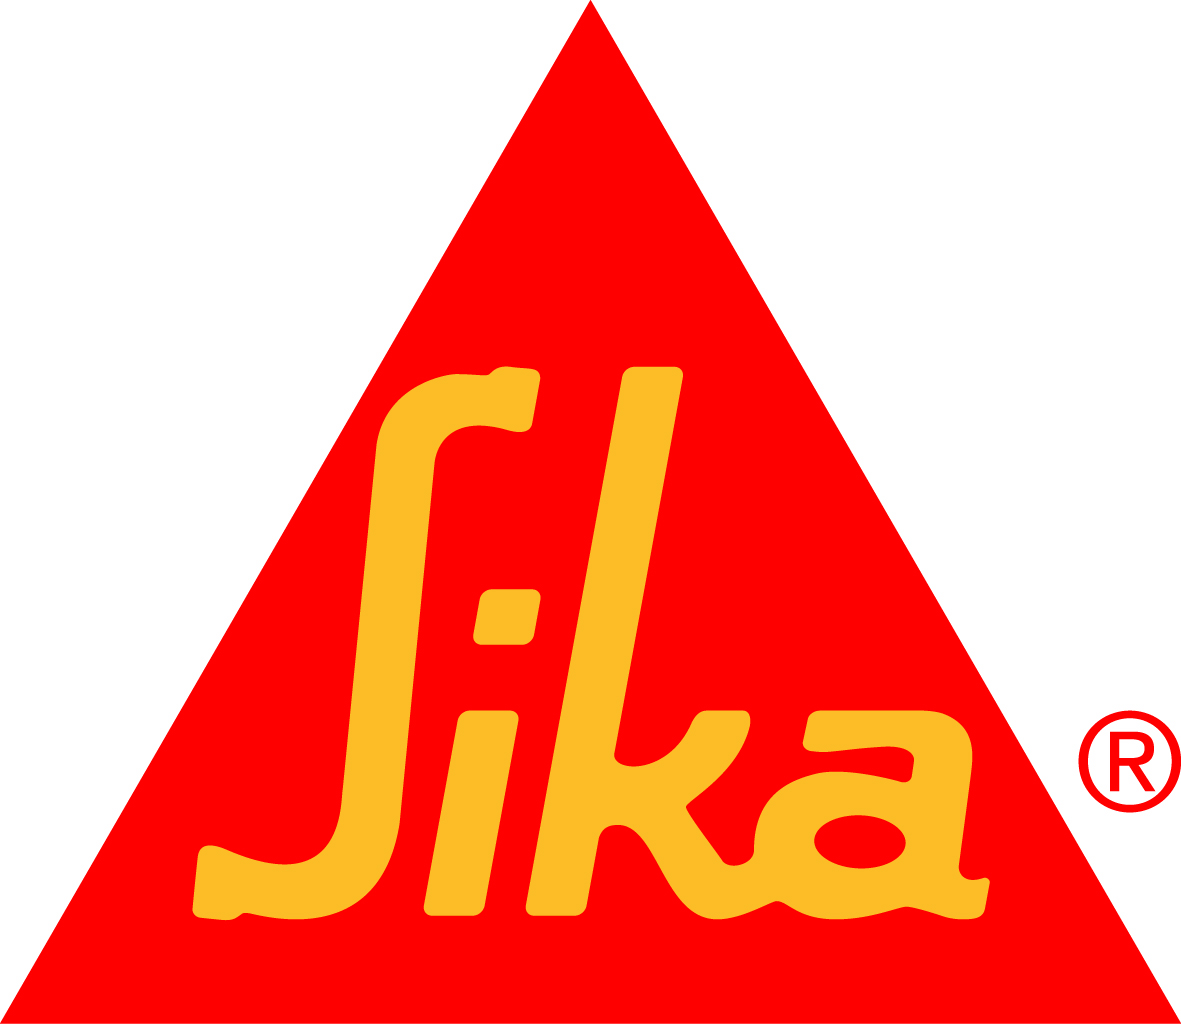 image-8514659-Sika-logo.jpg